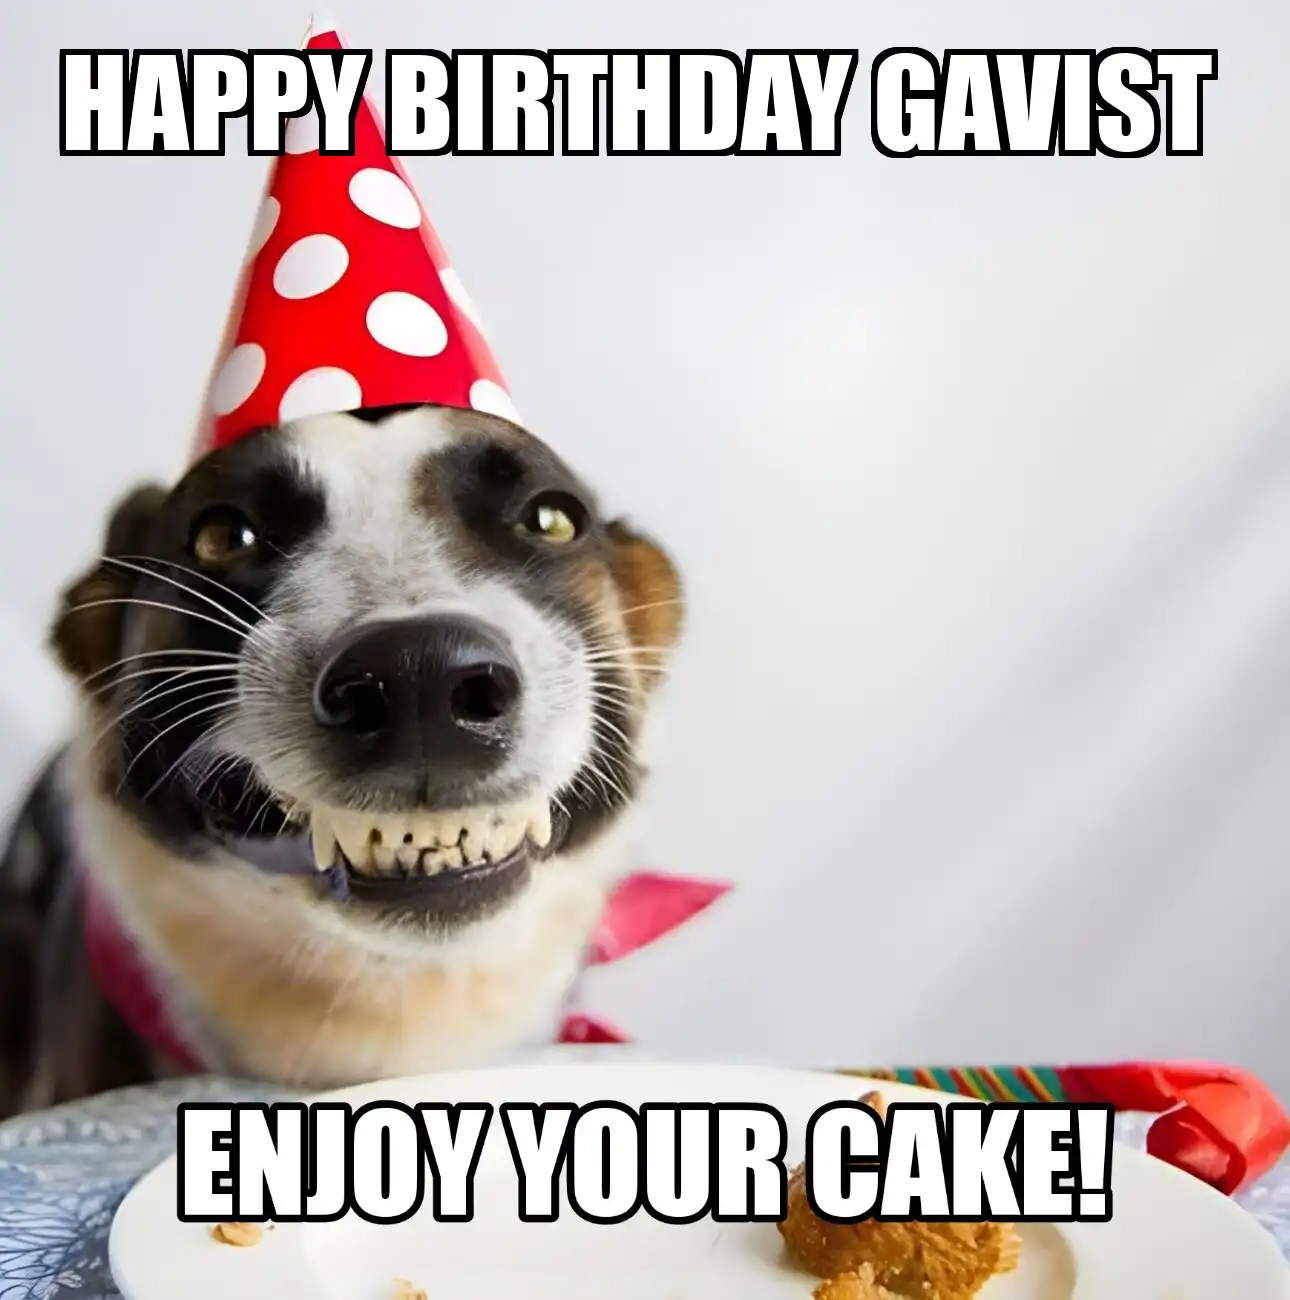 Happy Birthday Gavist Enjoy Your Cake Dog Meme